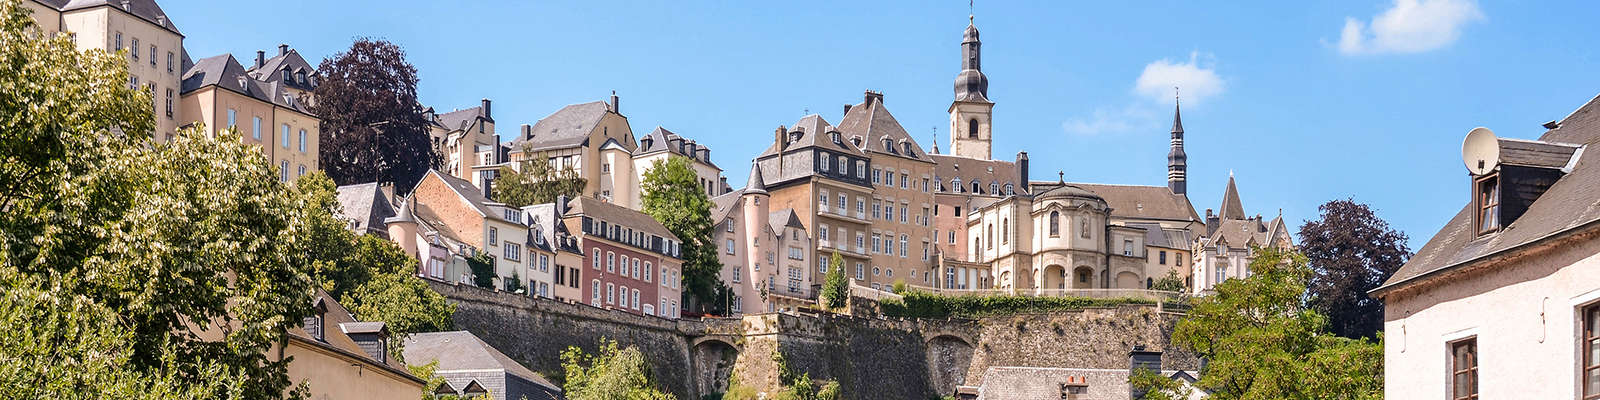 Recorre el casco histórico de Luxemburgo